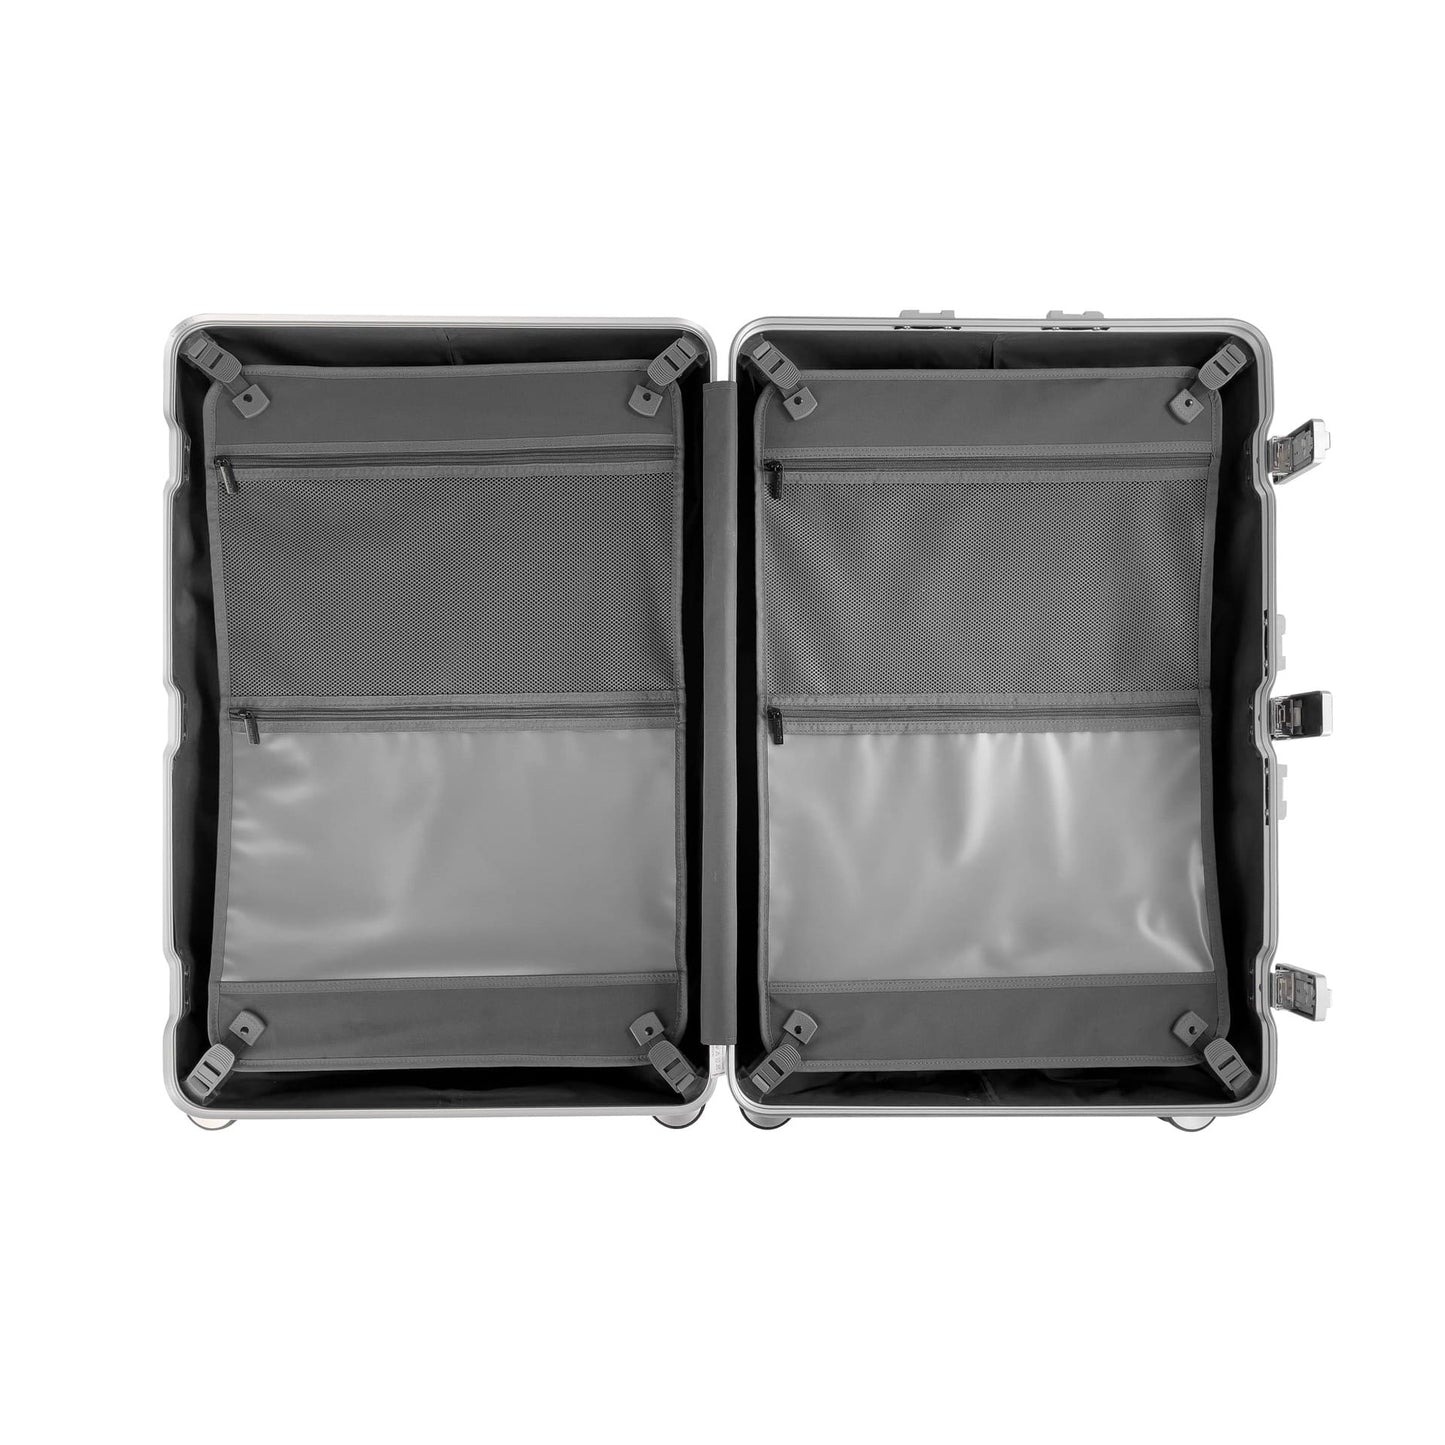 Flightmode Aluminium Luggage MEDIUM- Silver